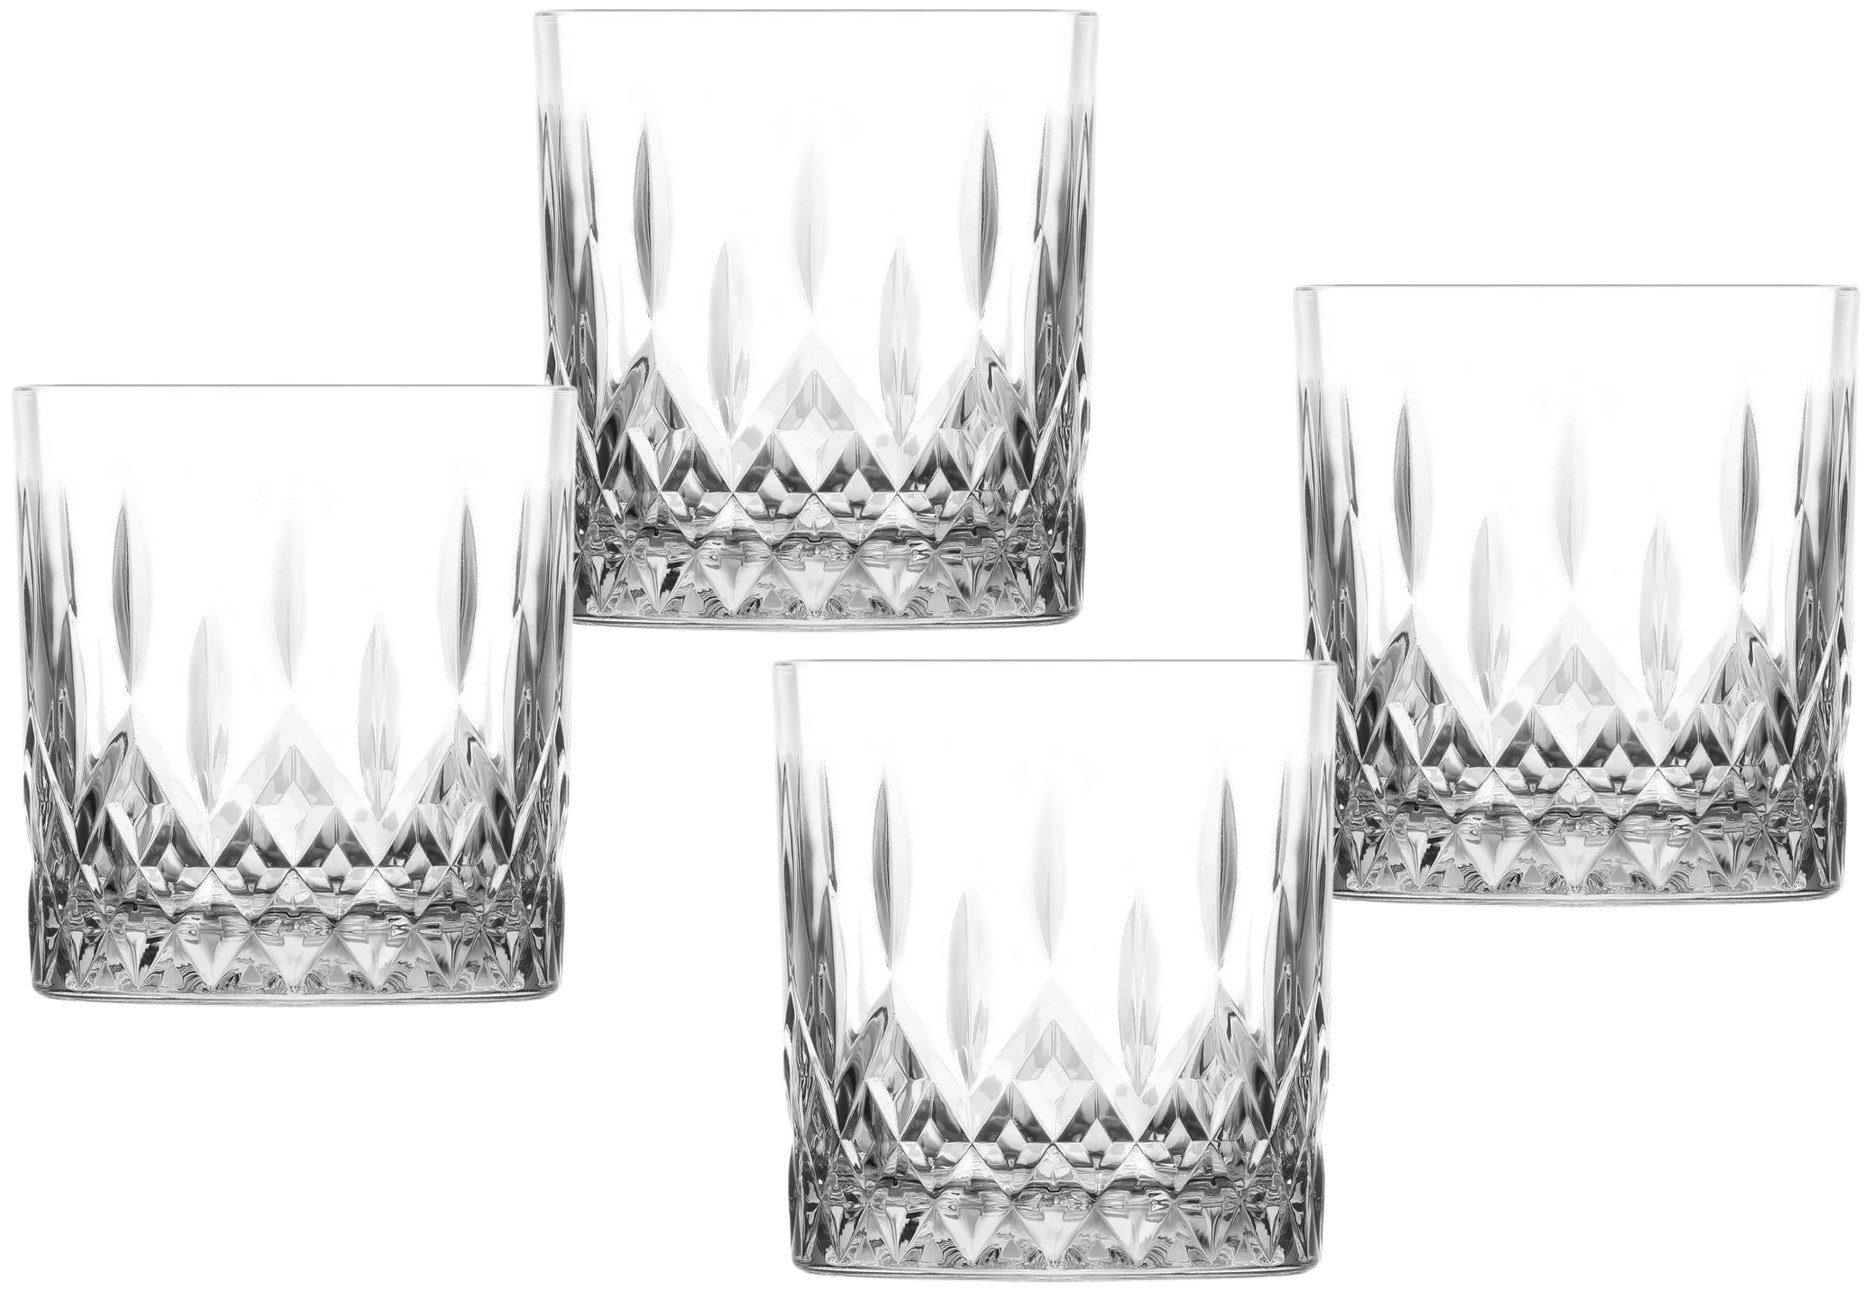 Emilja Whiskyglas Whiskygläser Odin 330ml - 4er Set - Cocktailglas